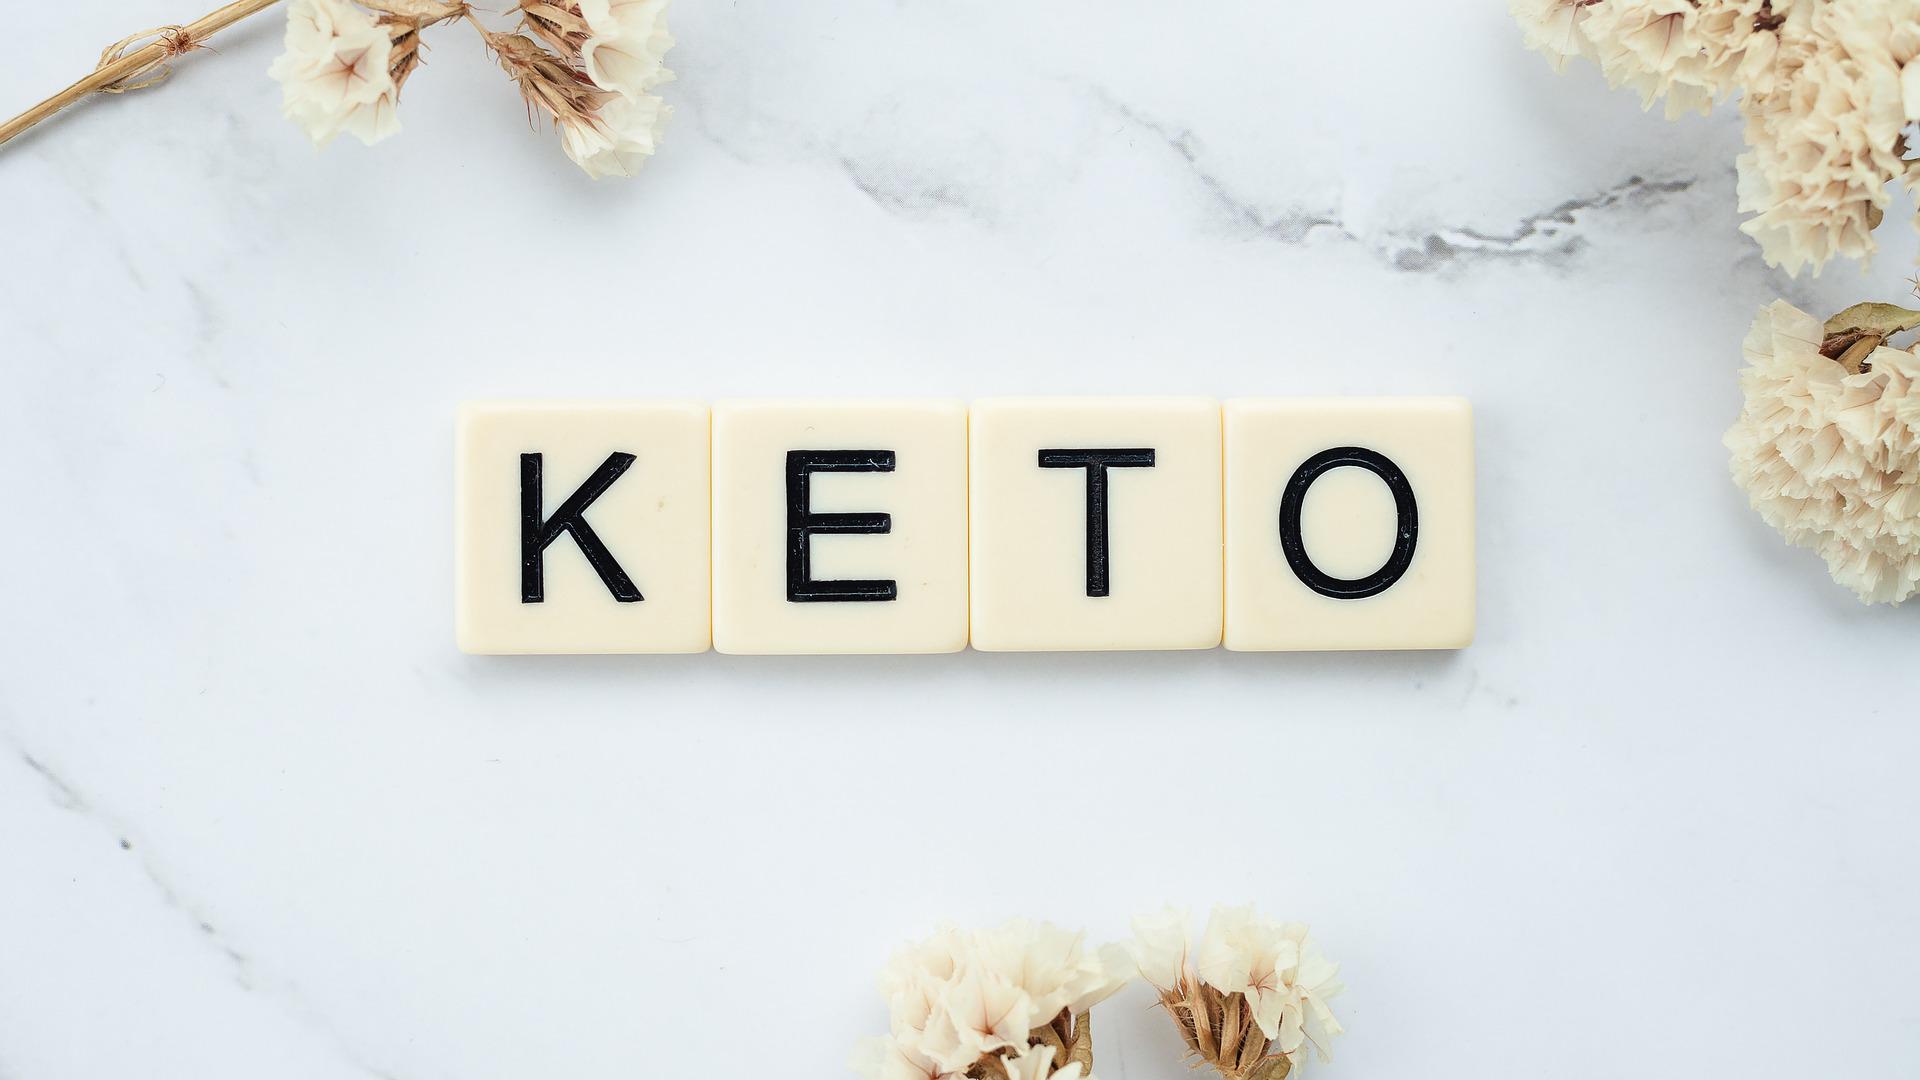 Многие сторонники кетодиеты молчат о том, что питание по принципу "больше животных жиров, минимум углеводов" увеличивает риск развития рака толстой кишки. Фото © Pixabay / healthguru